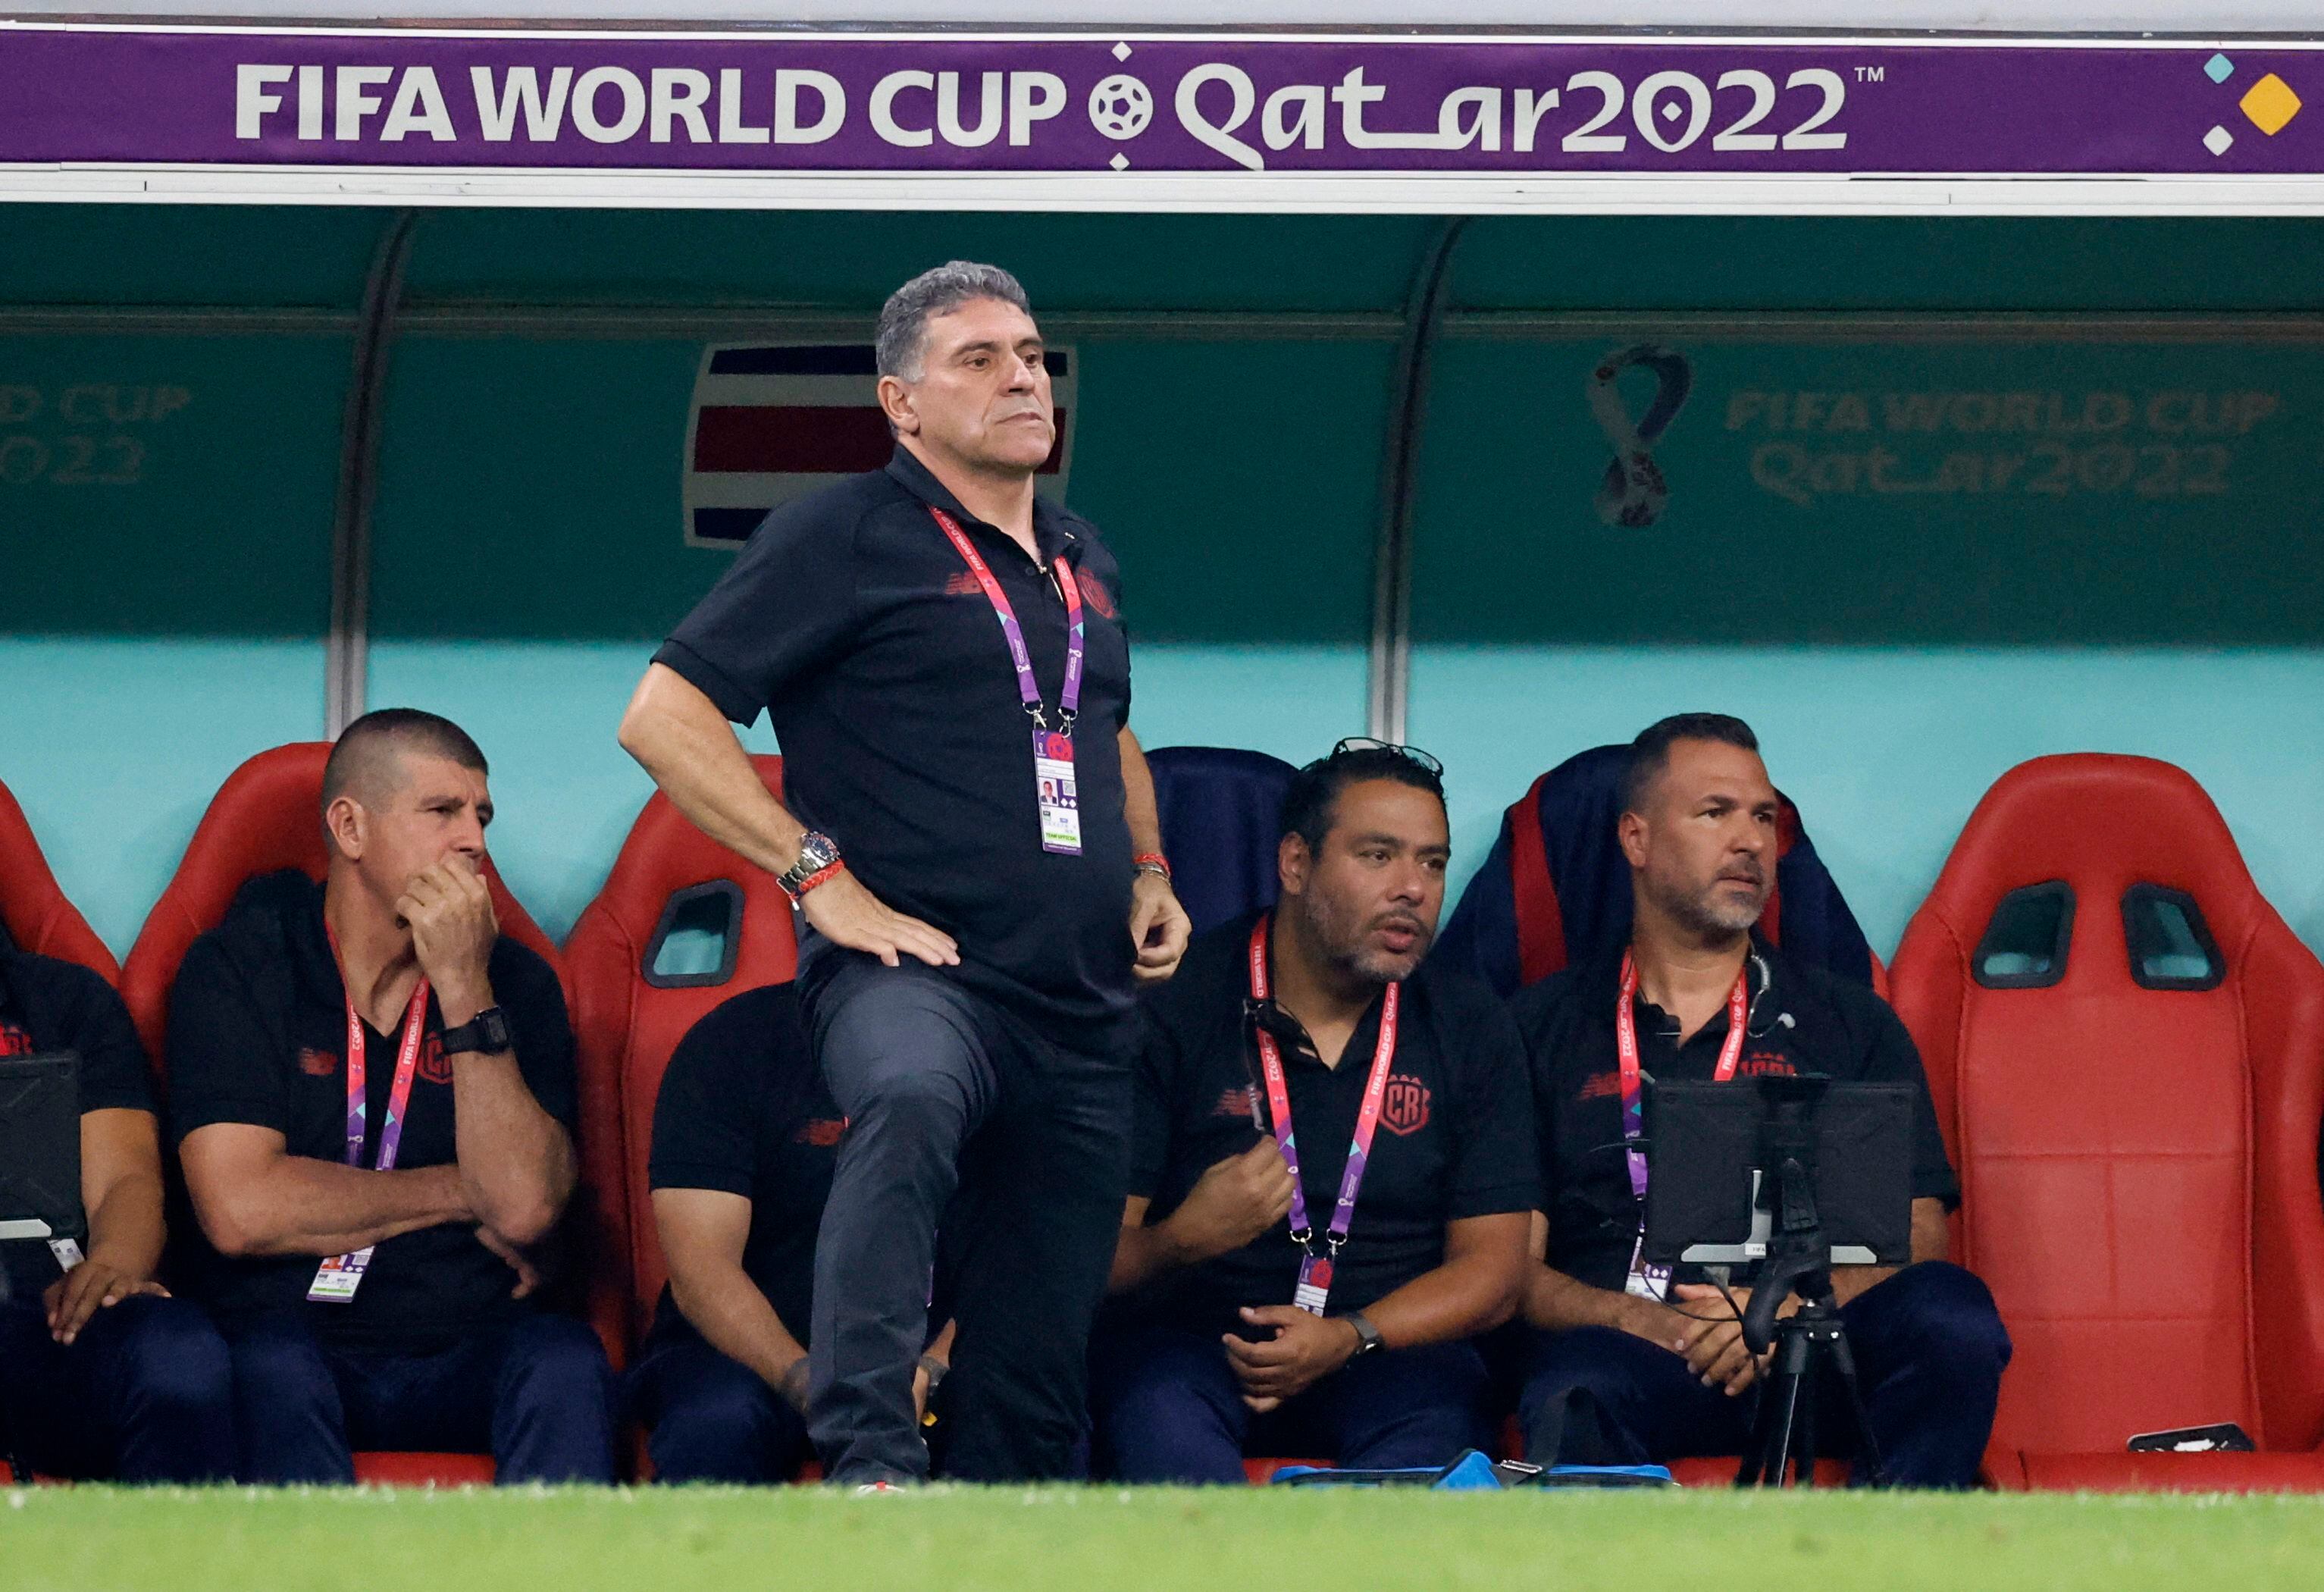 El técnico colombiano Luis Fernando Suárez no dejará el banquillo de la selección de Costa Rica. Imagen: REUTERS/Thaier Al-Sudani